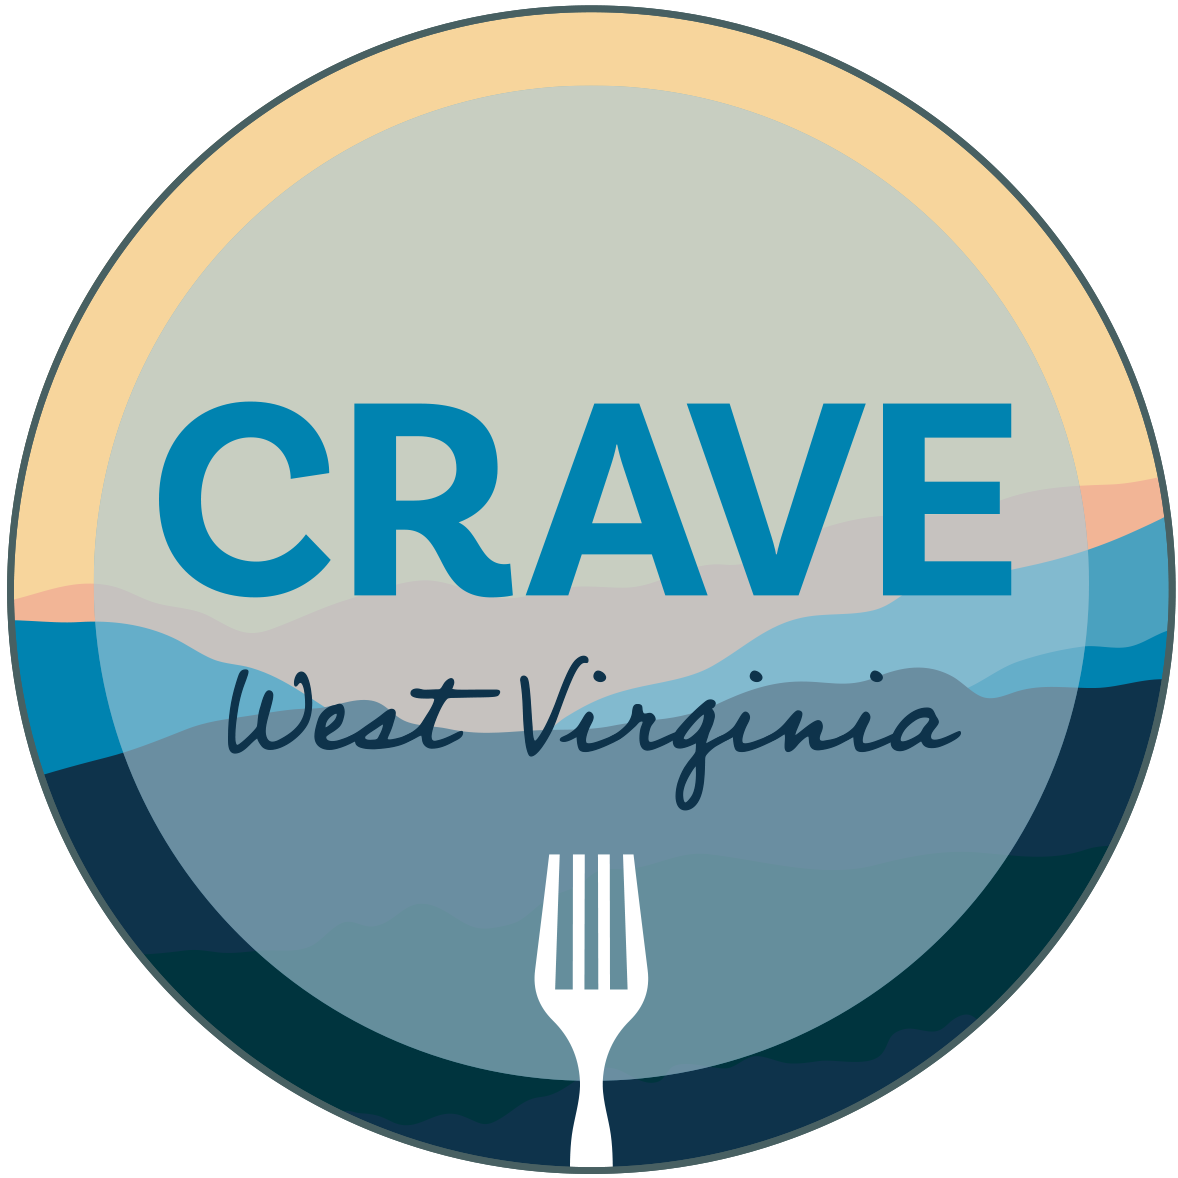 Crave West Virginia